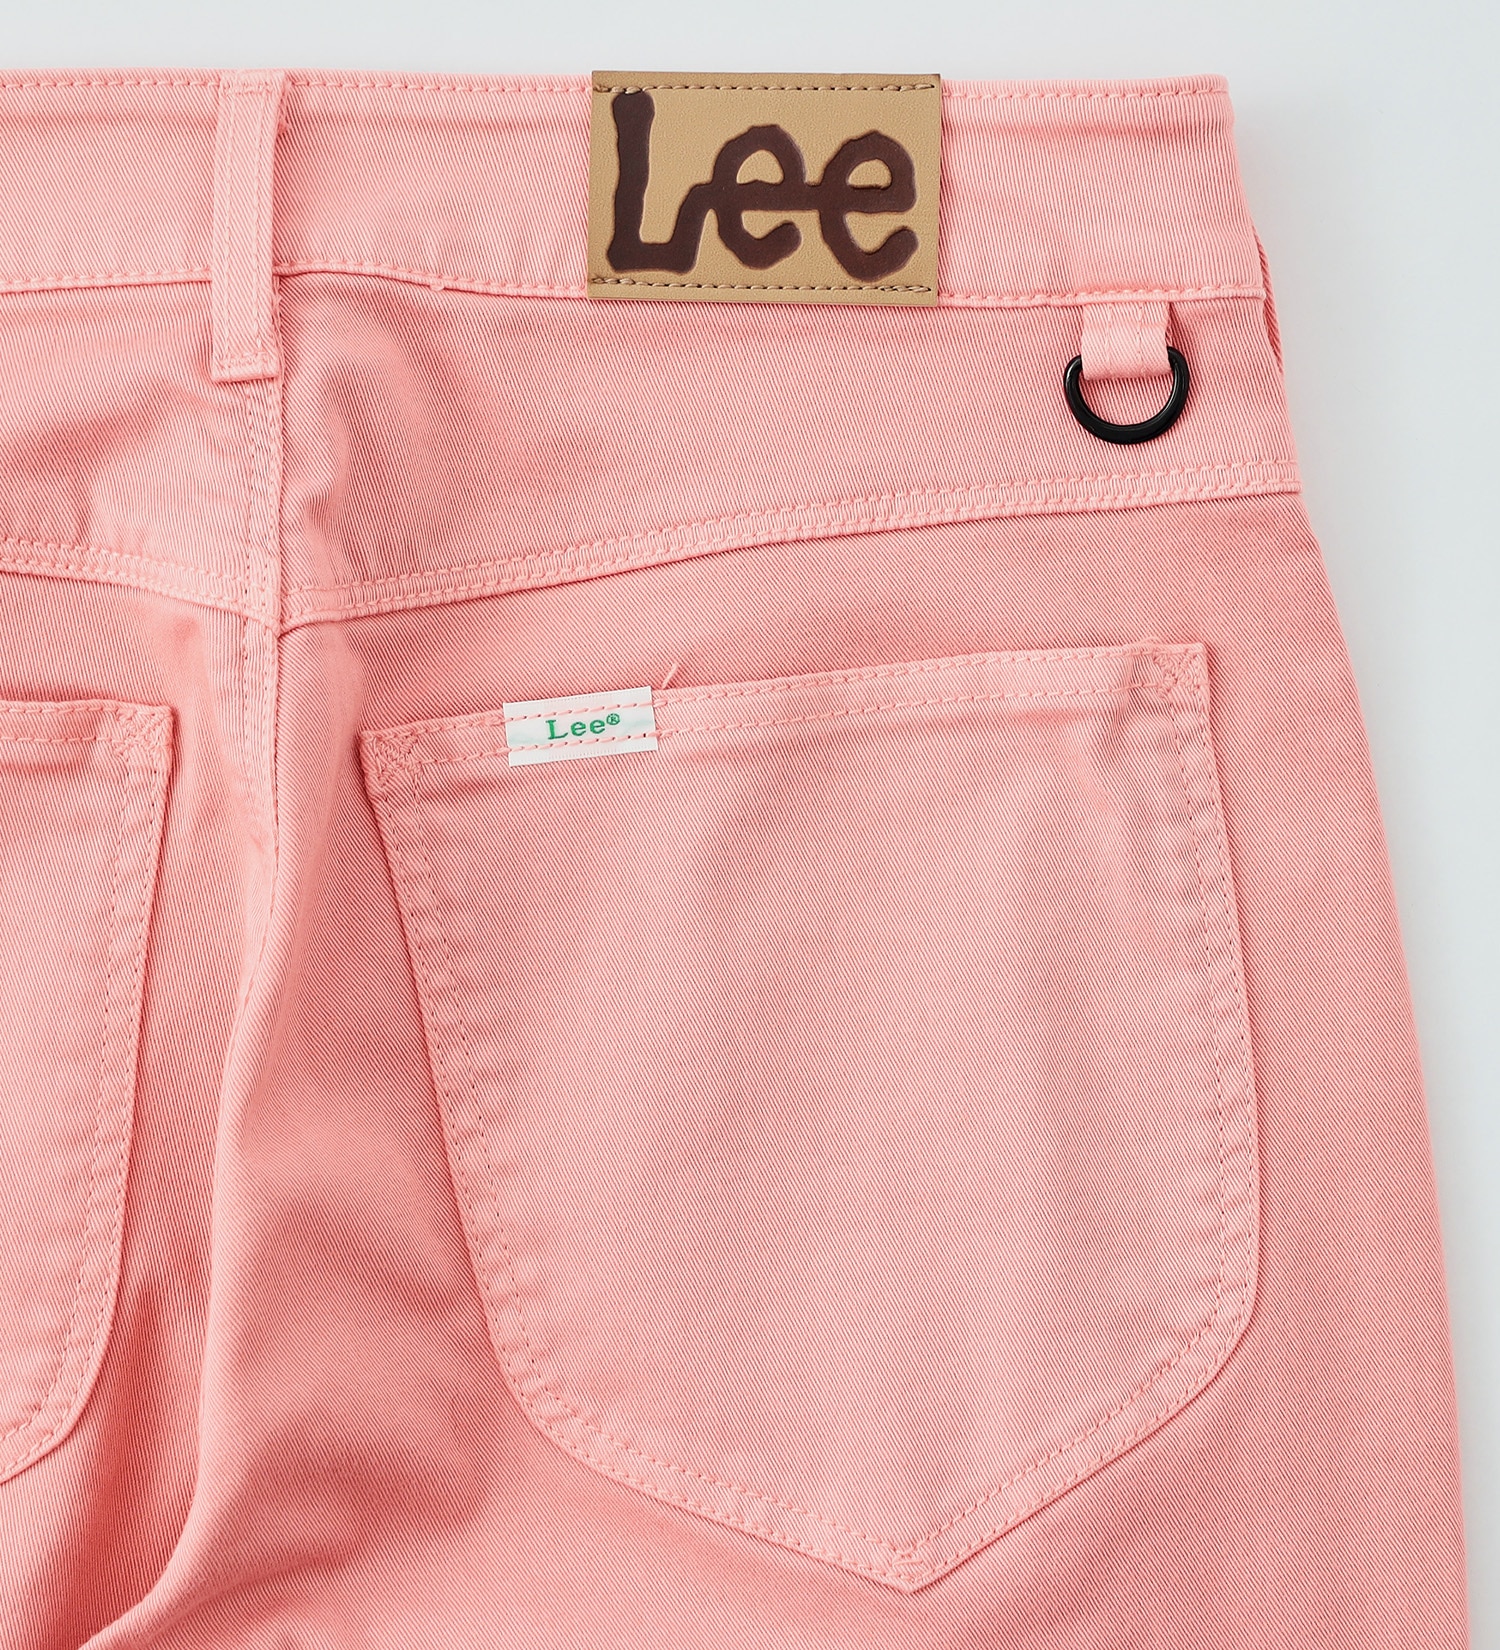 Lee(リー)の【試着対象】【Lee GOLF】レディース ストレッチスキニーパンツ|パンツ/パンツ/レディース|ピンク